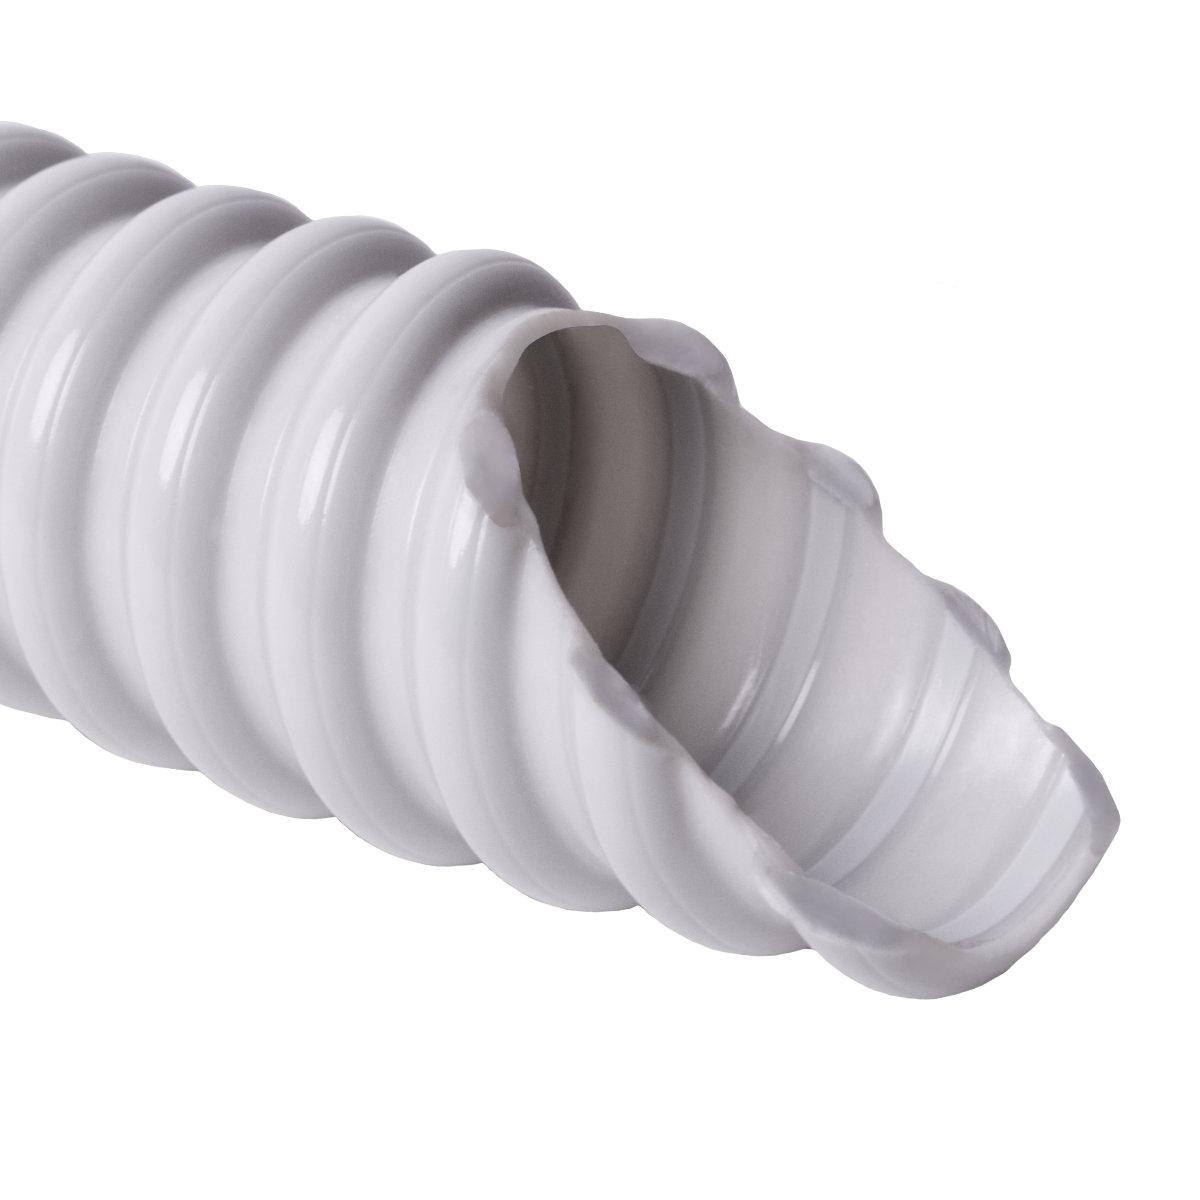 Труба гофрована електромонтажна армована спираллю SPIROFLEX самозагасаюча; 320 N/5см / 5 см; Ø16мм; твердий ПВХ; світло-сіра